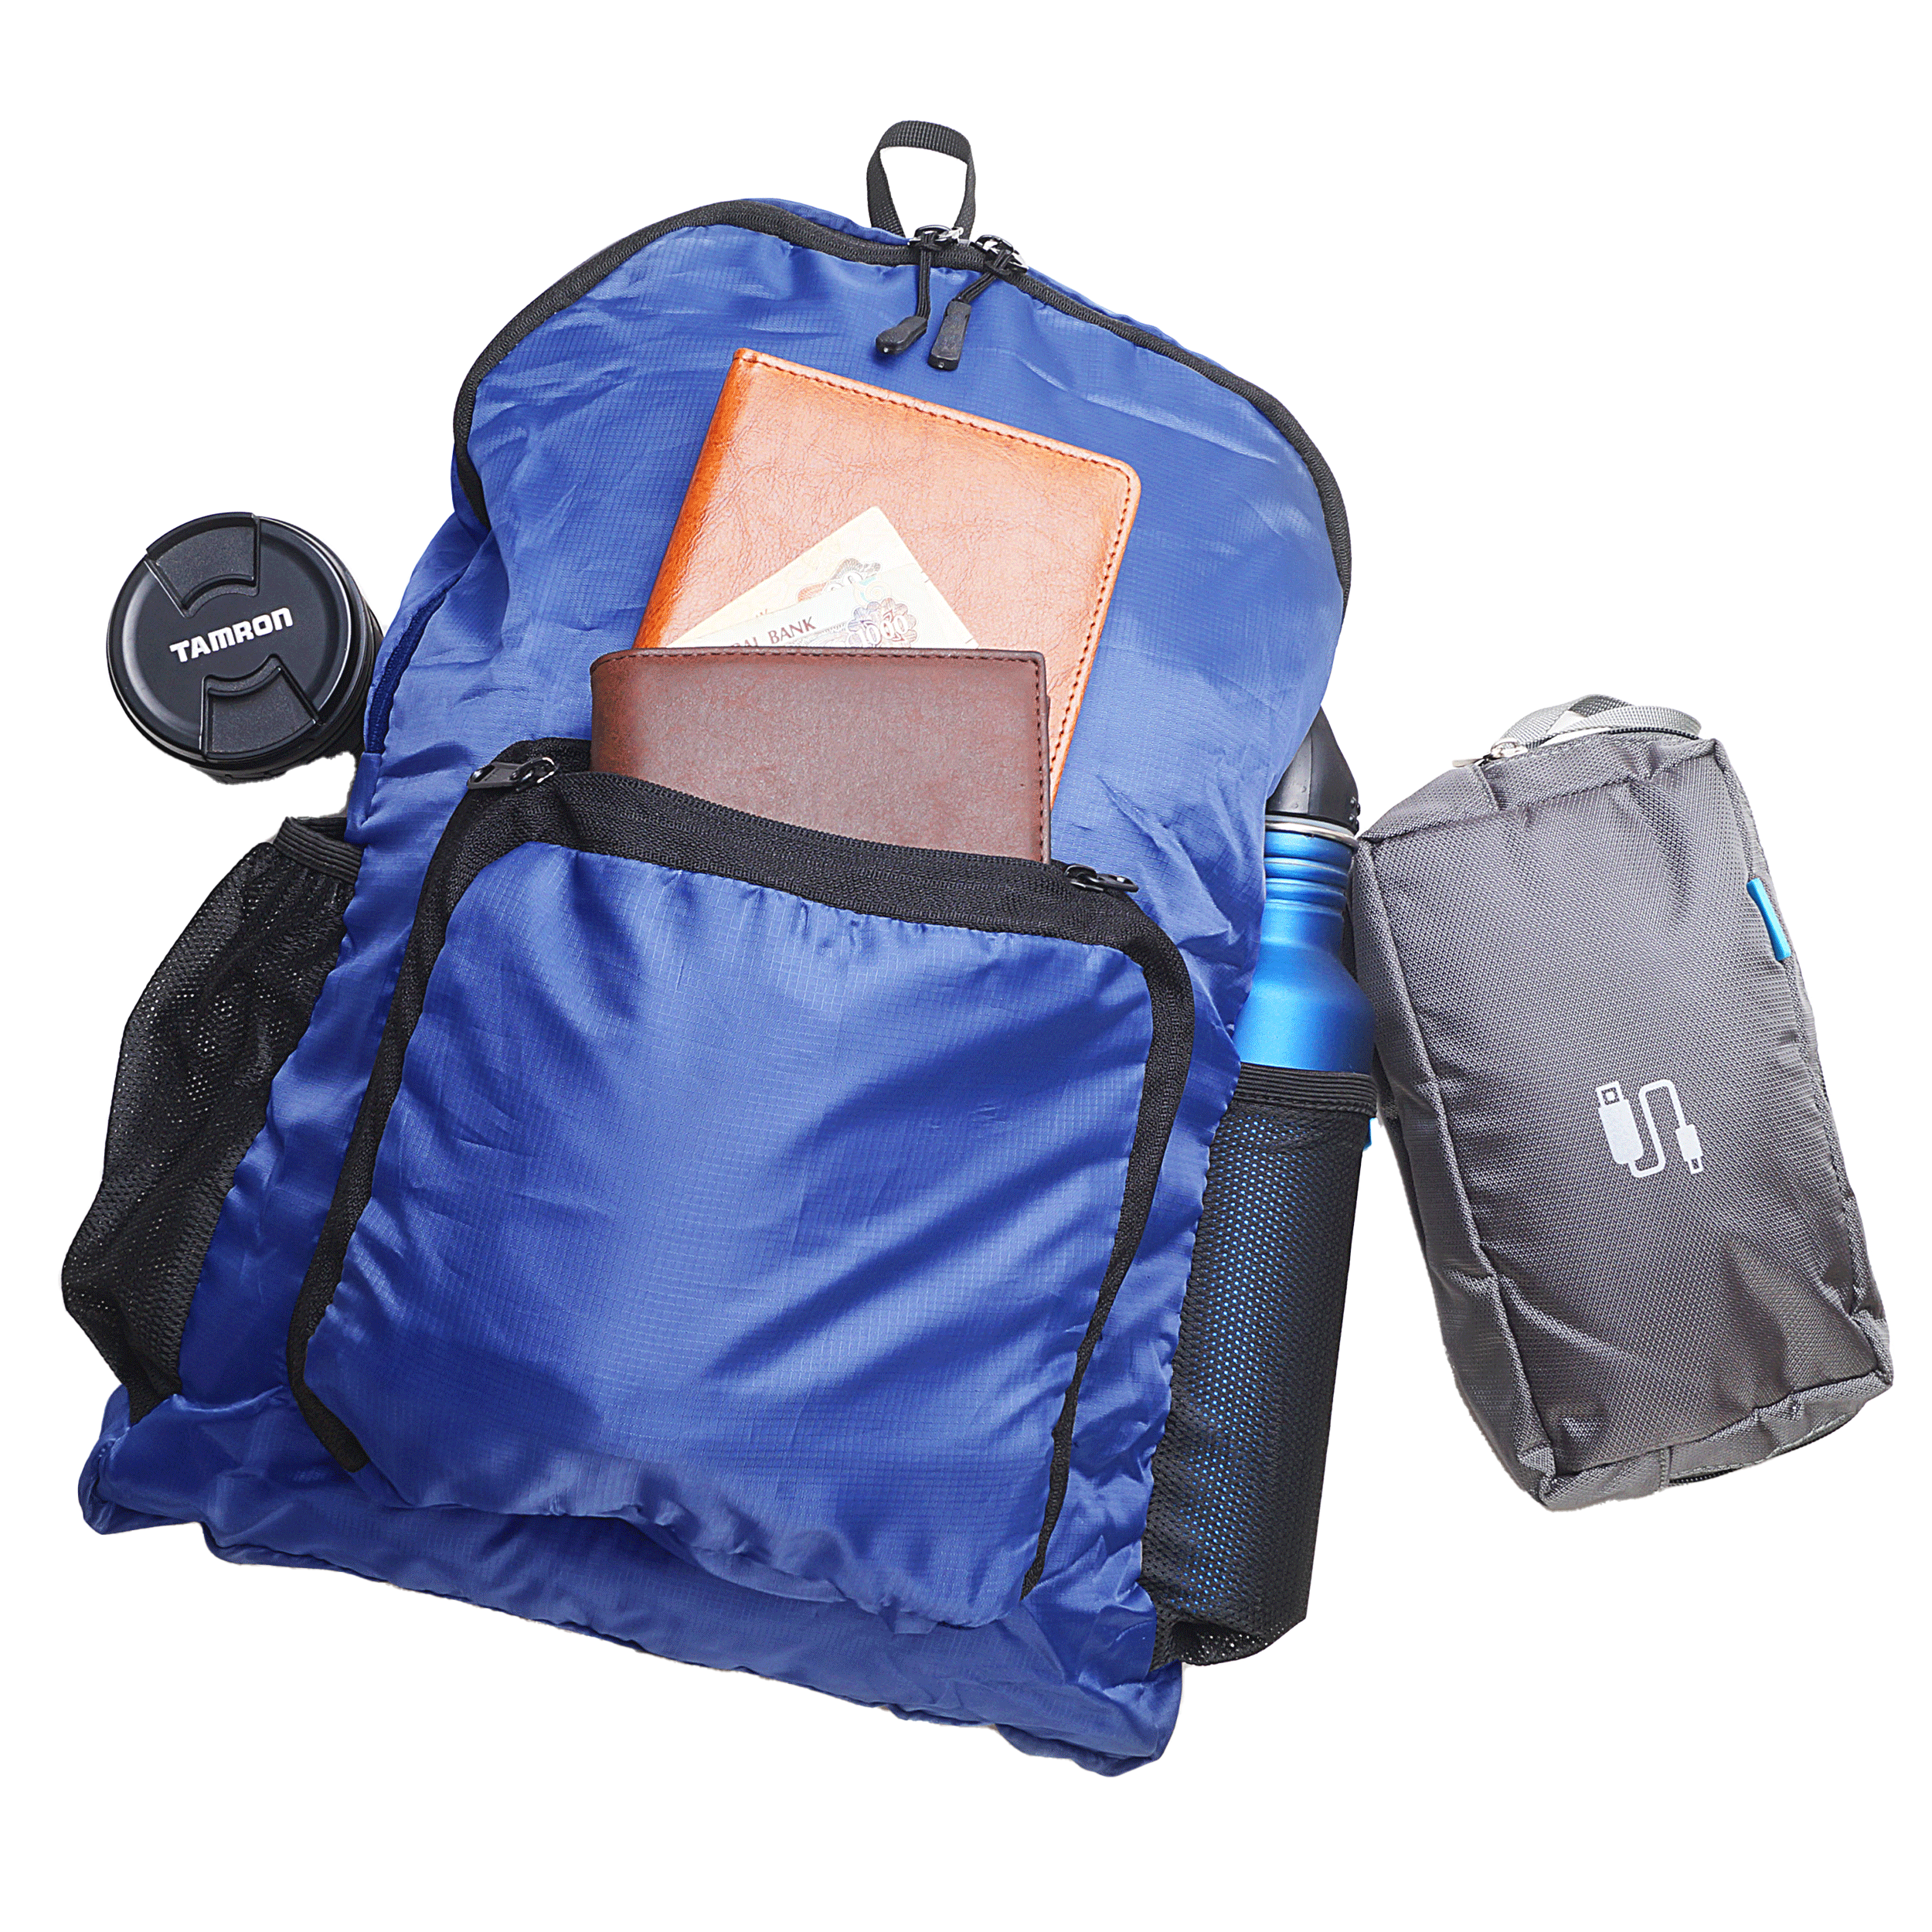 Traveldoo Lightweight Folding Backpack (CBX01002, Blue)